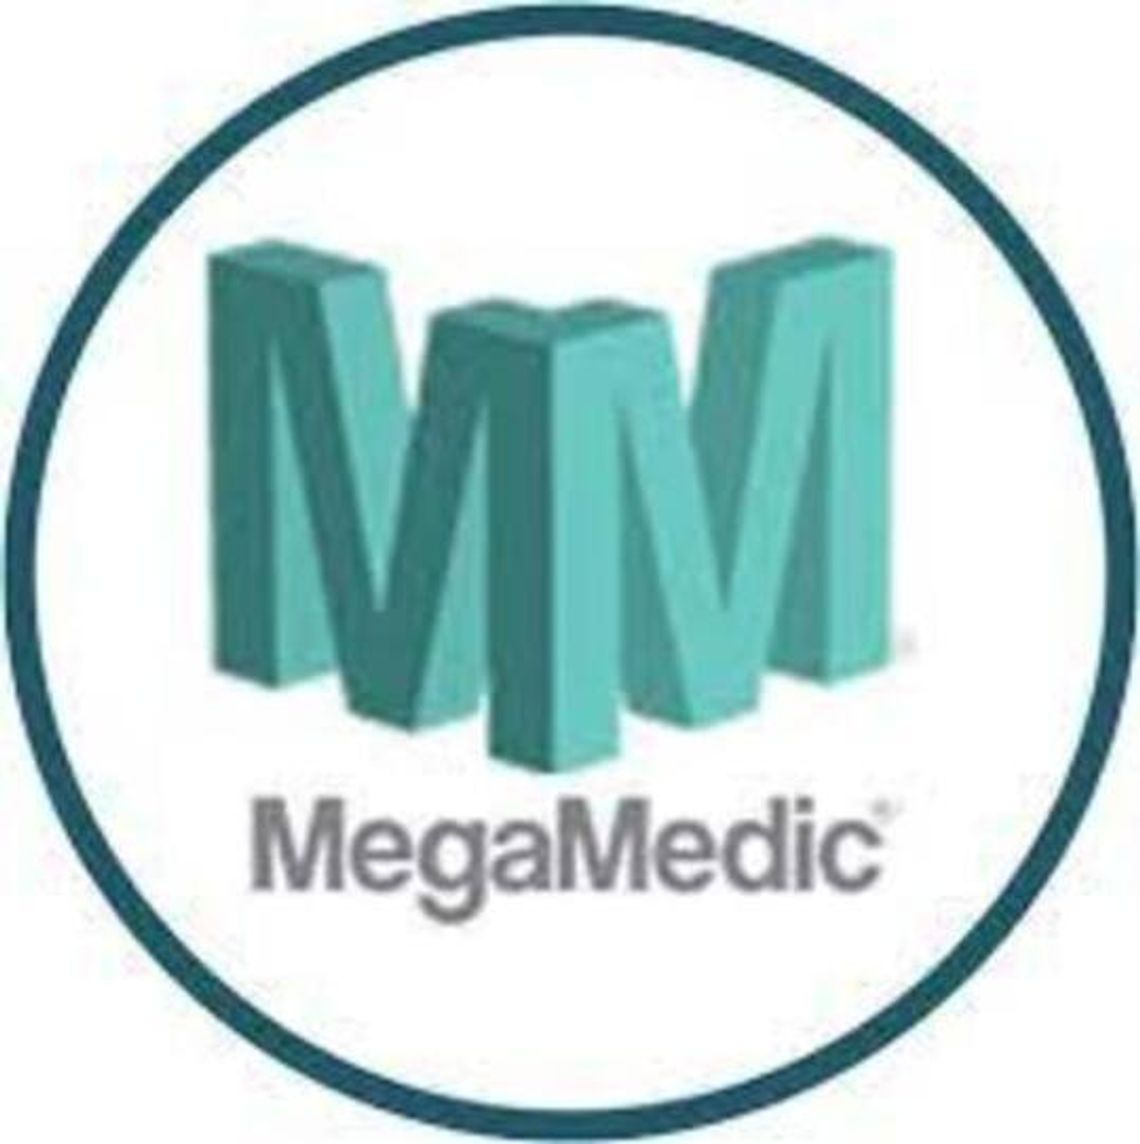 MegaMedic - sklep medyczny